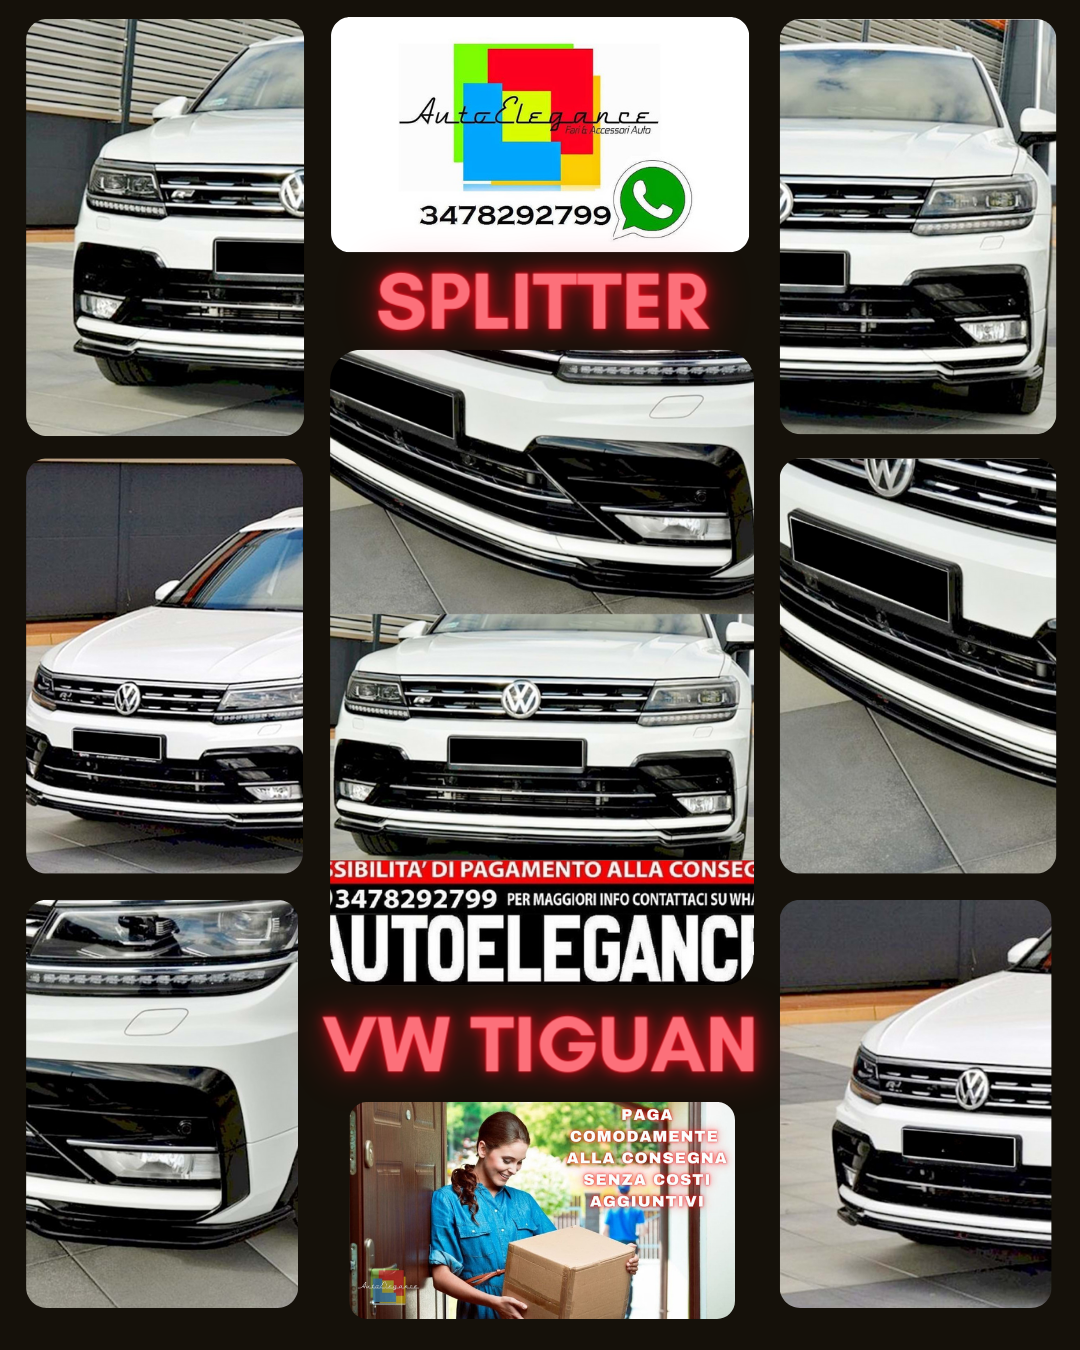 SPLITTER ANTERIORE ADATTO PER VW TIGUAN 2016+ LOOK NERO LUCIDO DESIGN SPORTIVO